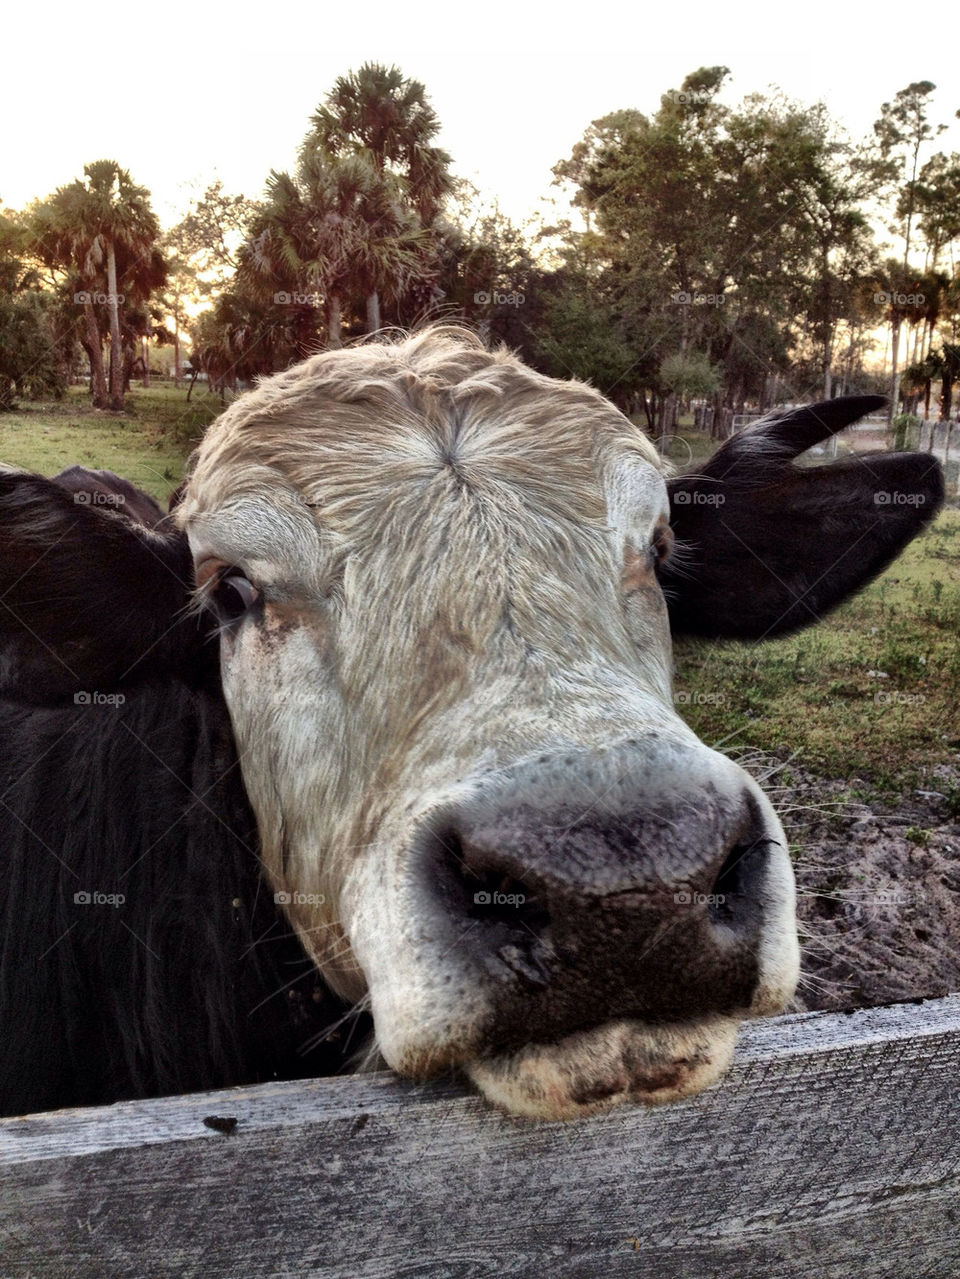 Curious bull.